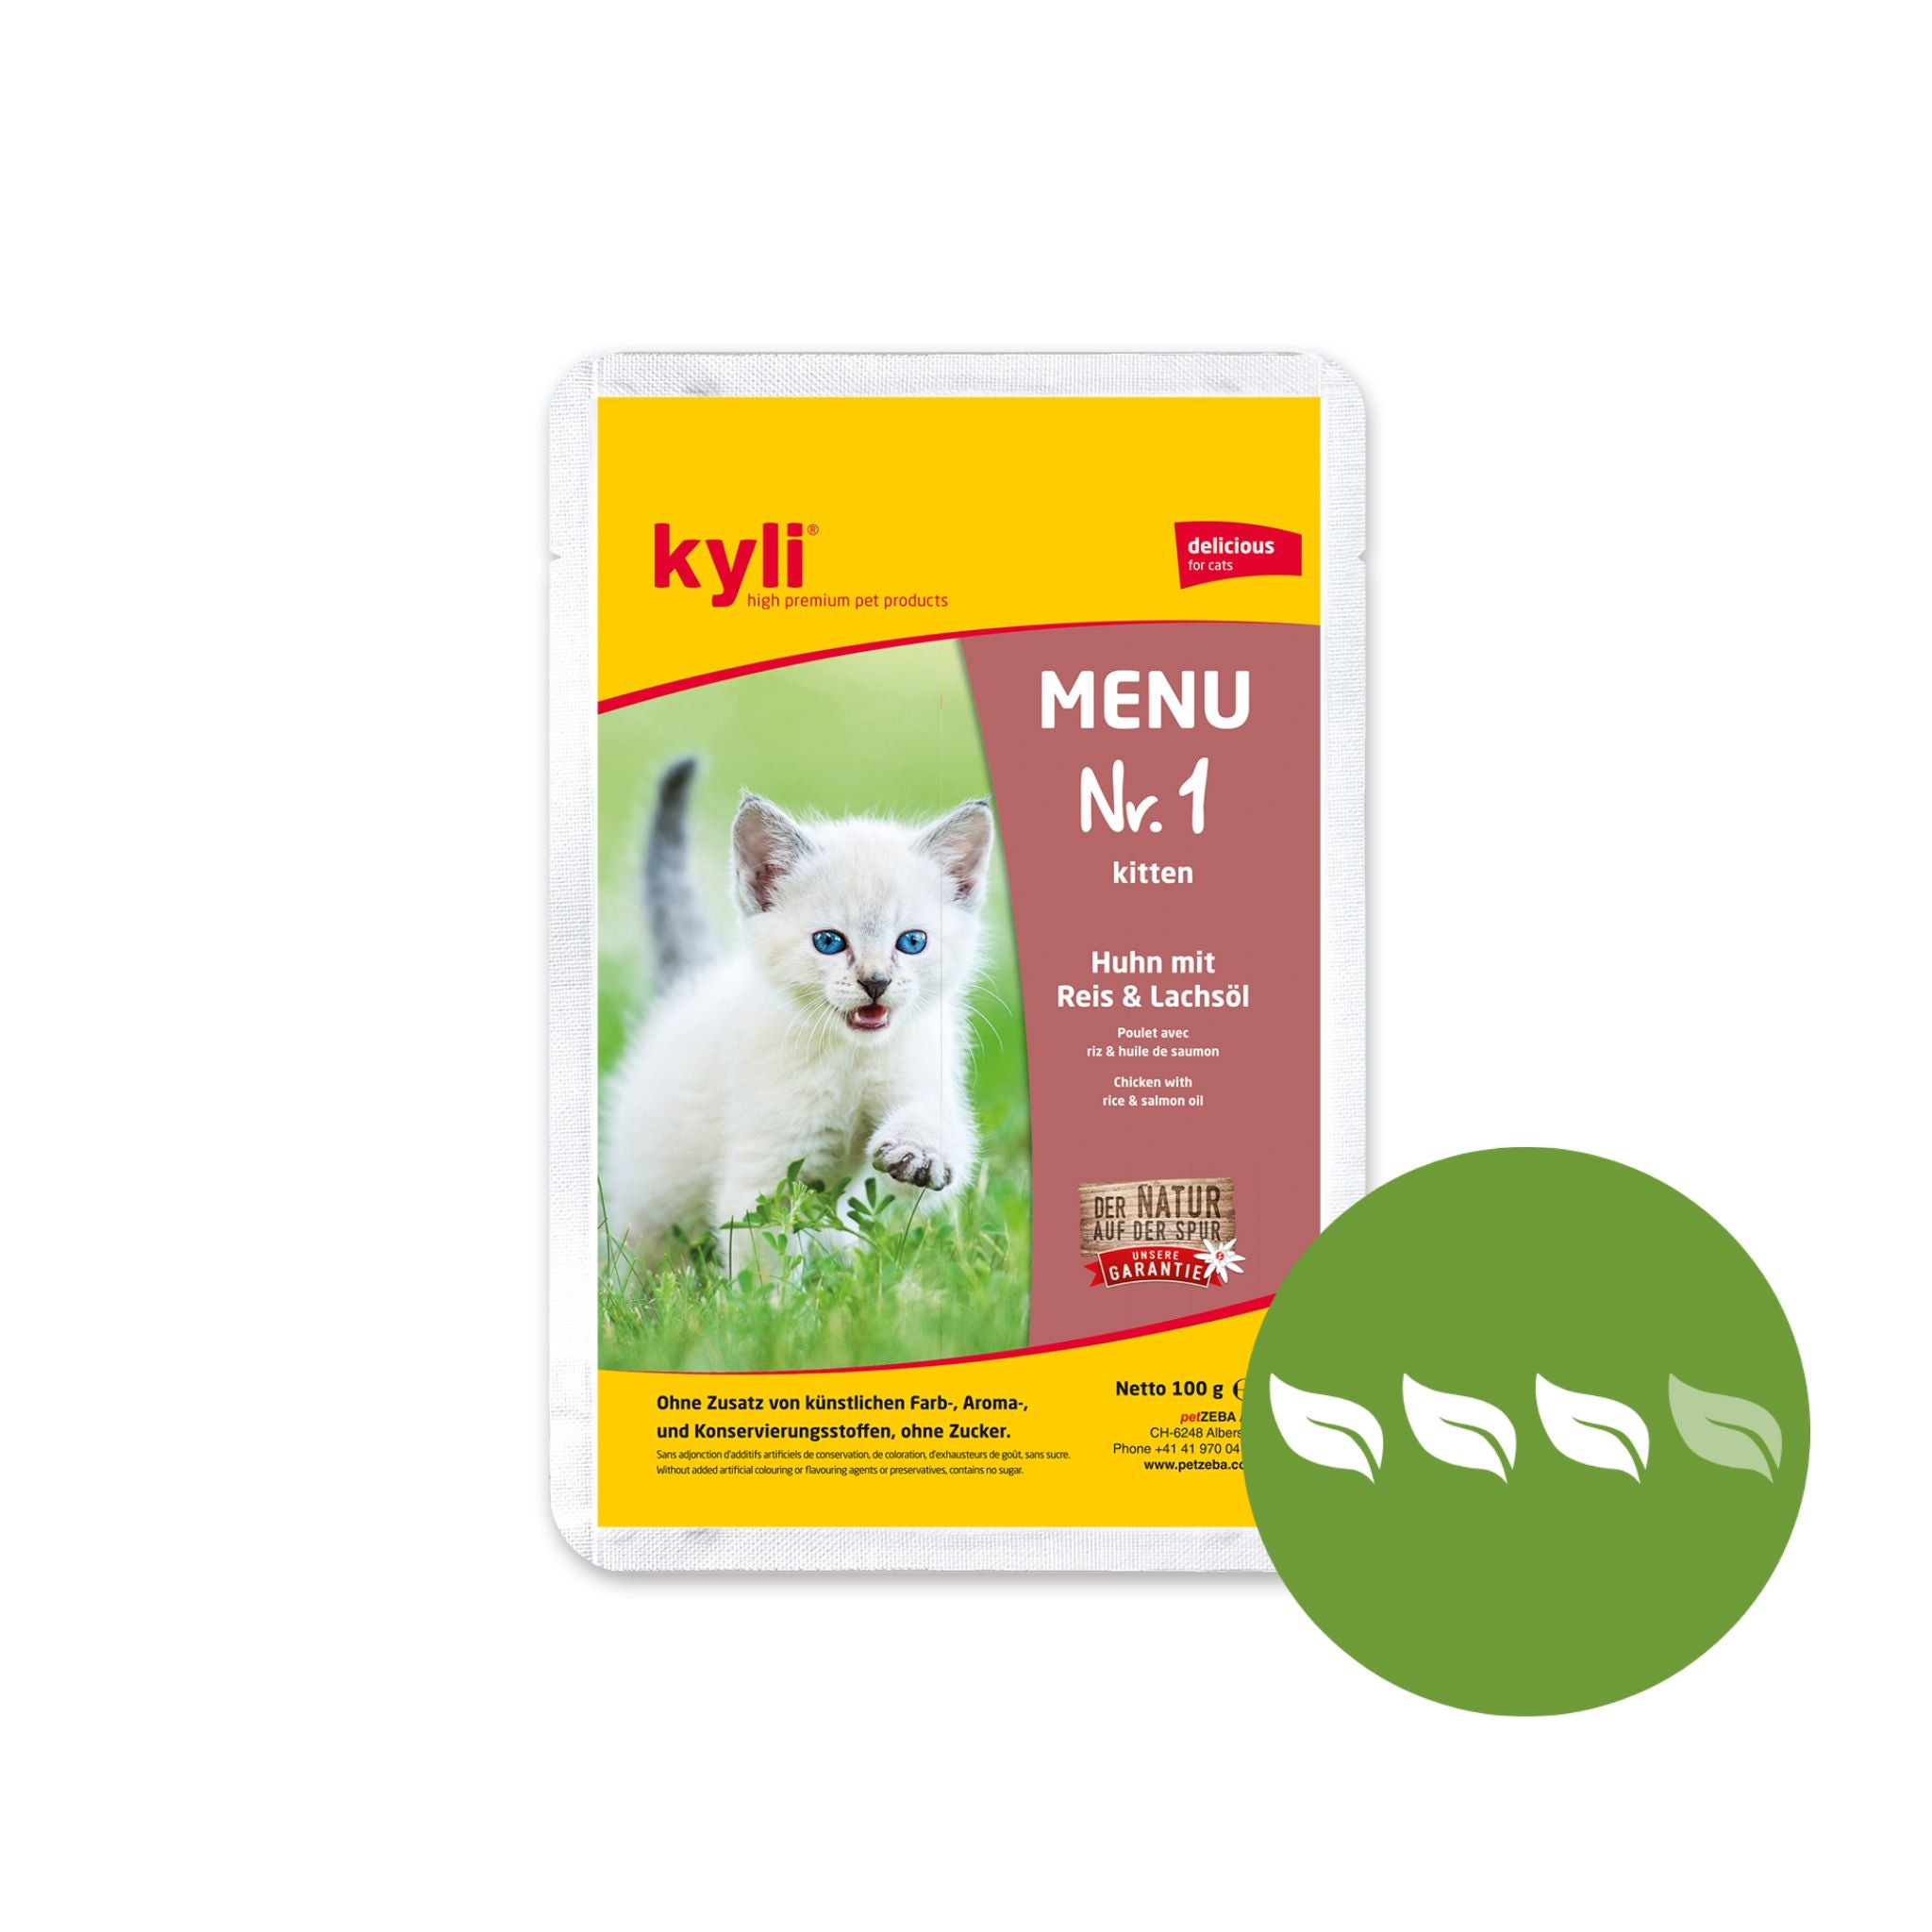 Artikel mit dem Namen Kyli Menu Nr. 1 Kitten im Shop von zoo.de , dem Onlineshop für nachhaltiges Hundefutter und Katzenfutter.